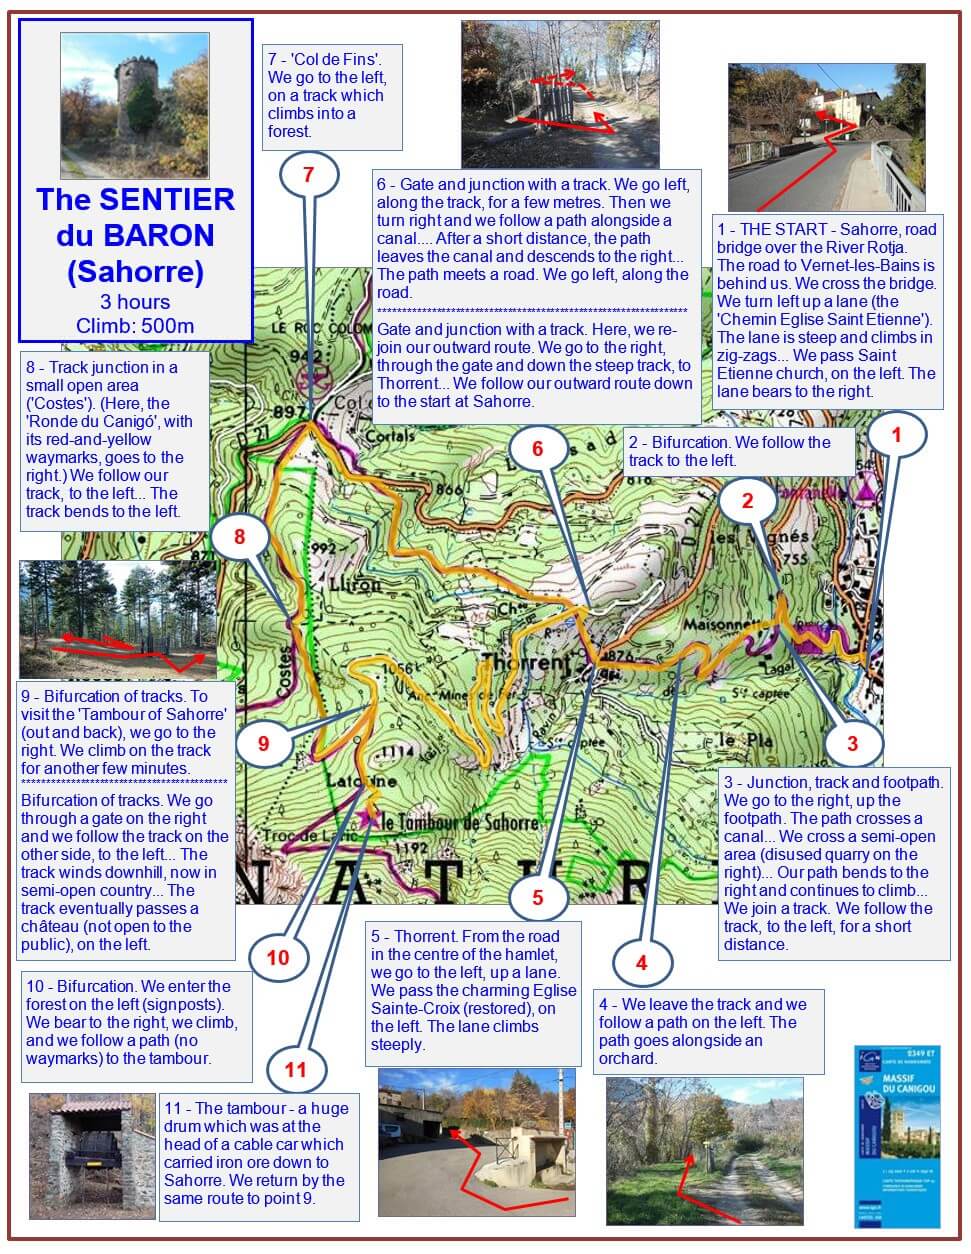 The Sentier du Baron (Sahorre) (description) map